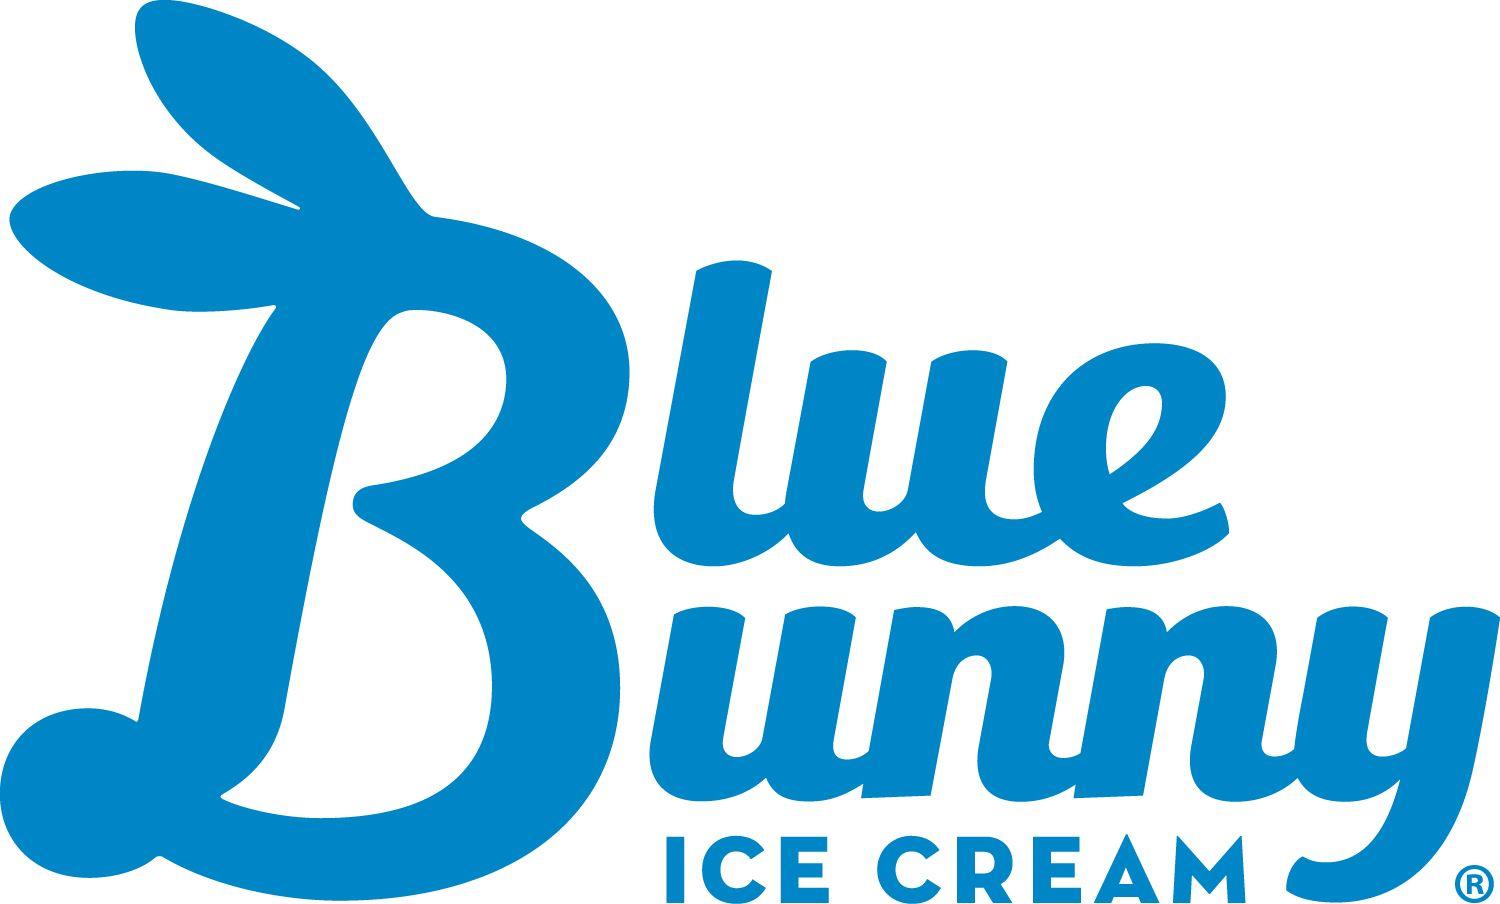 Ice Cream Company Logo - Company Logos - Wells